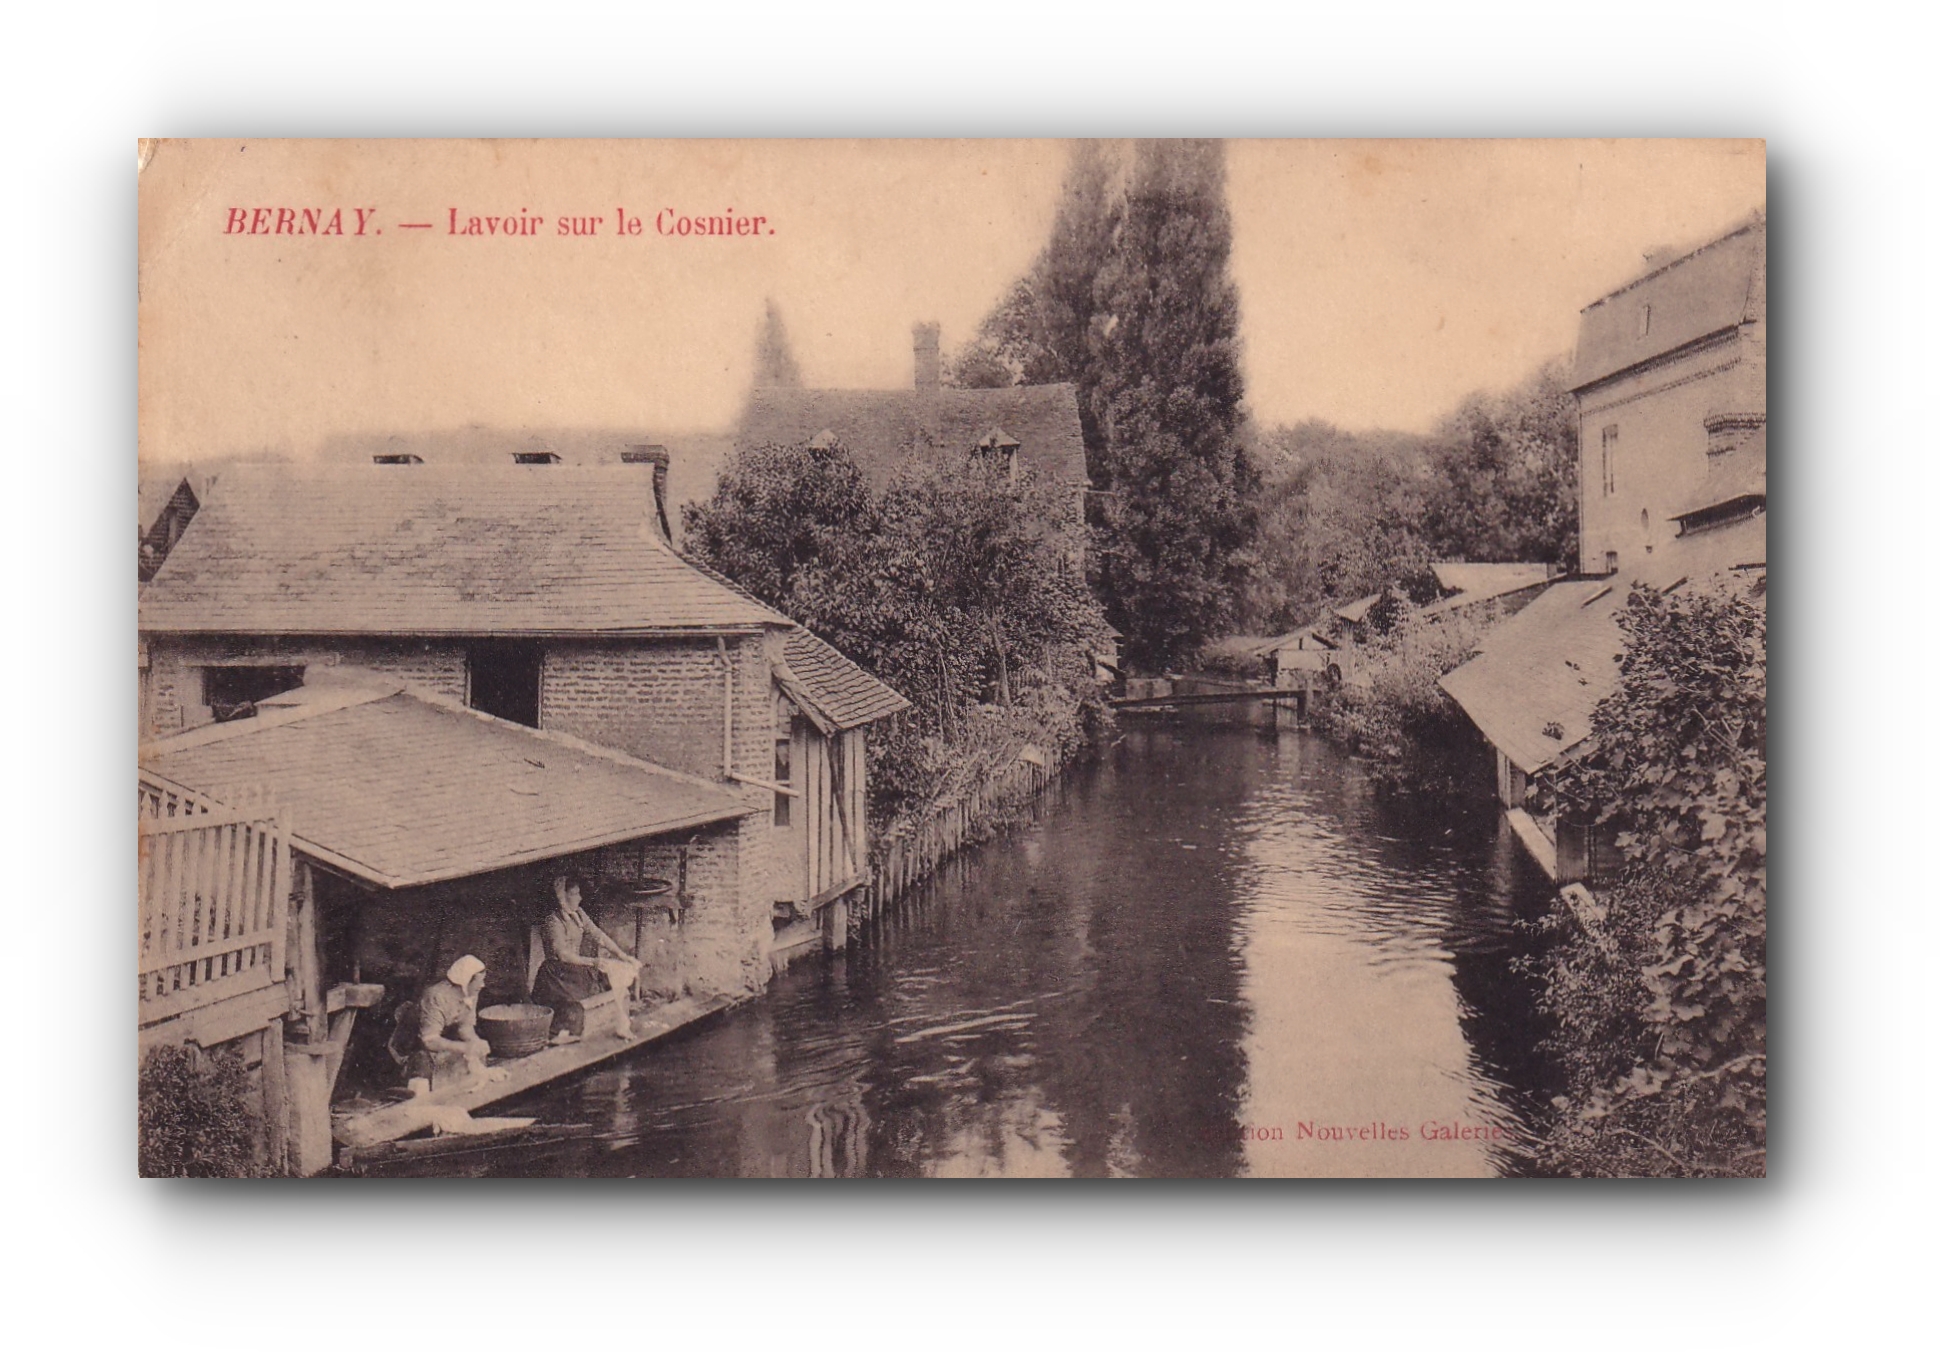 - Lavoir sur le Cosnier - BERNAY - 16.08.1907 - 